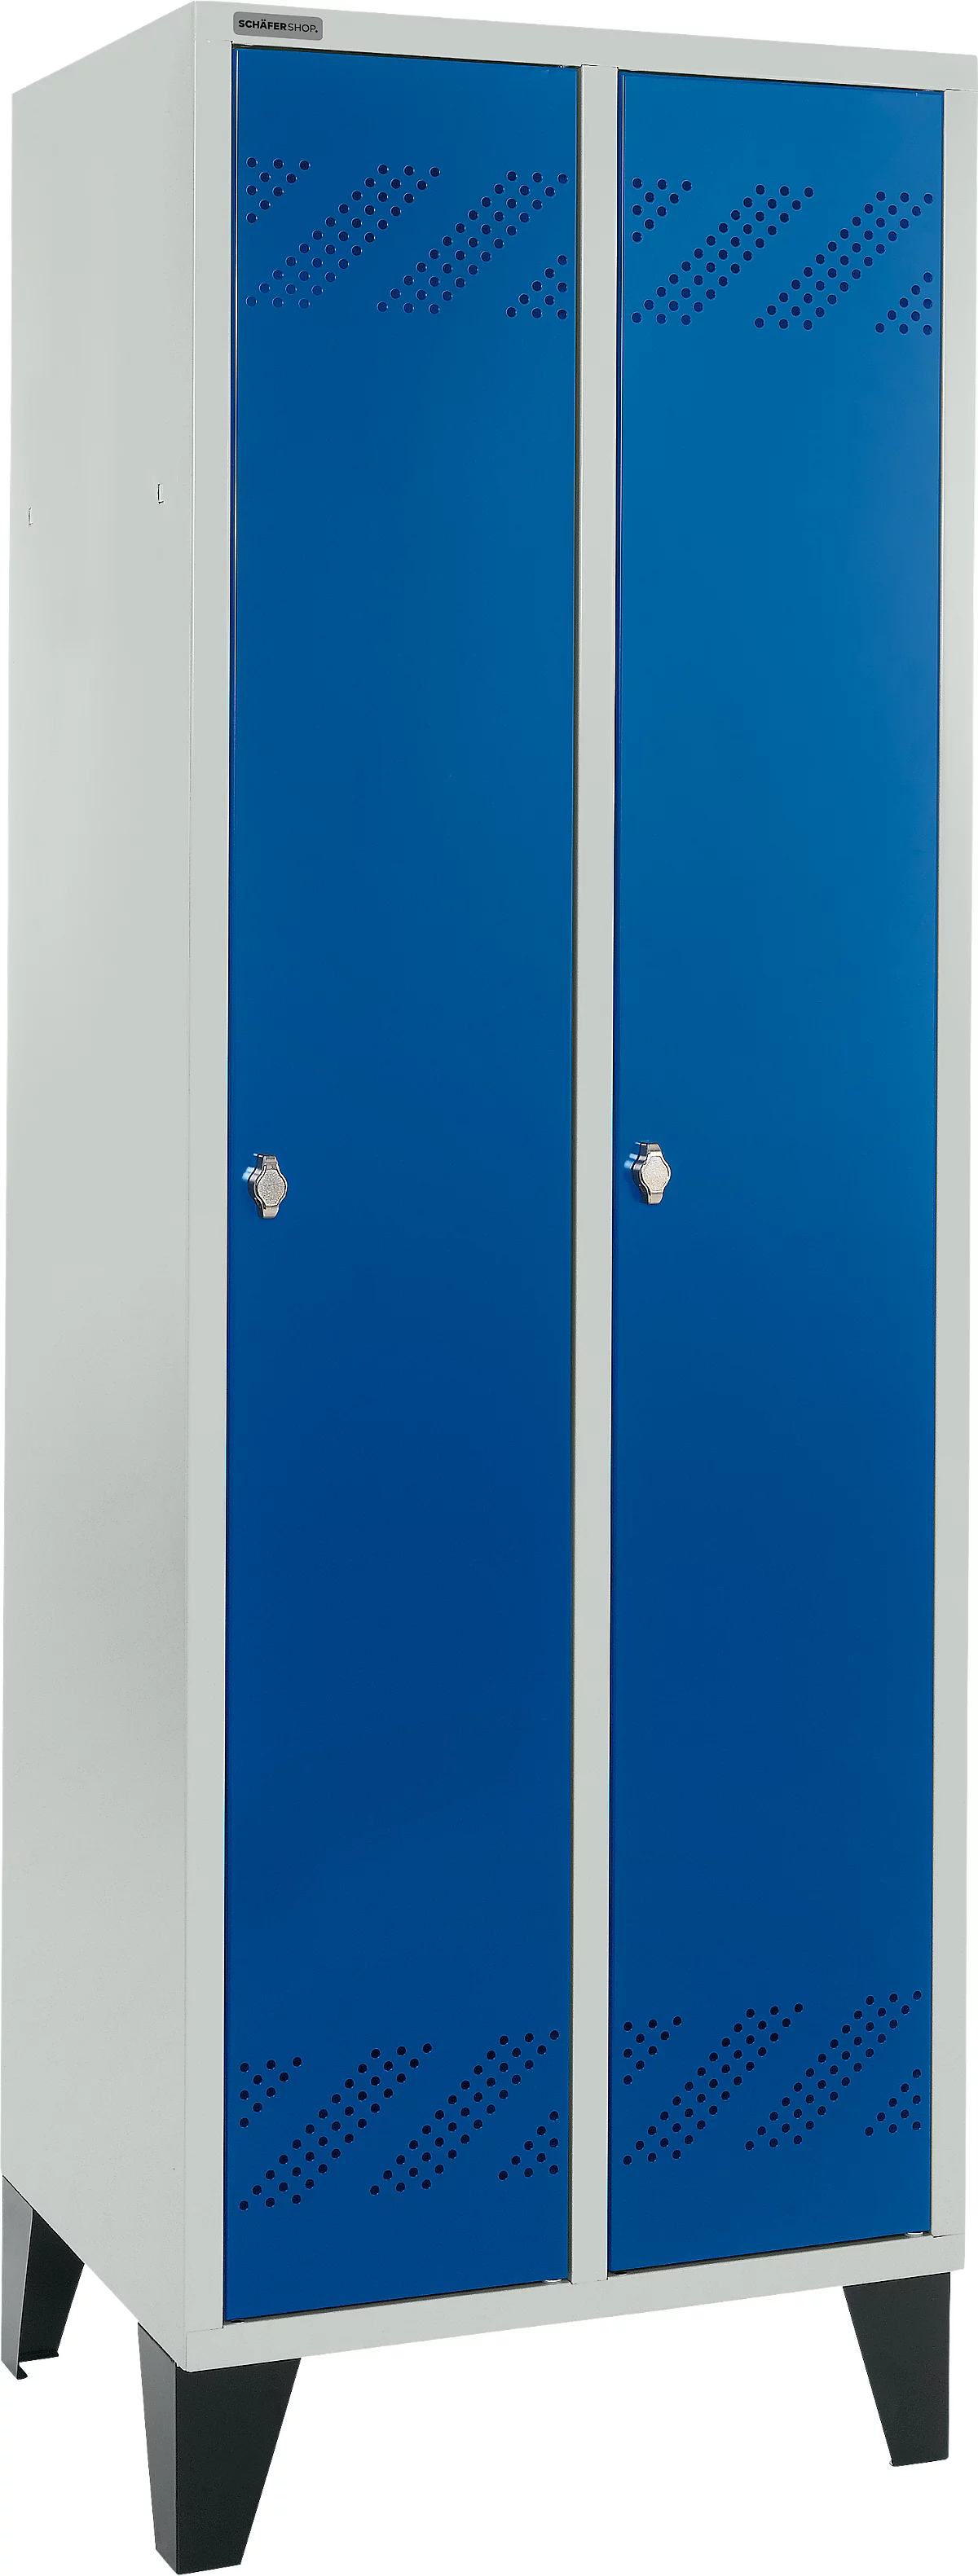 Schäfer Shop Pure Armario, 2 compartimentos, sobre patas, cierre giratorio, gris claro/azul genciana